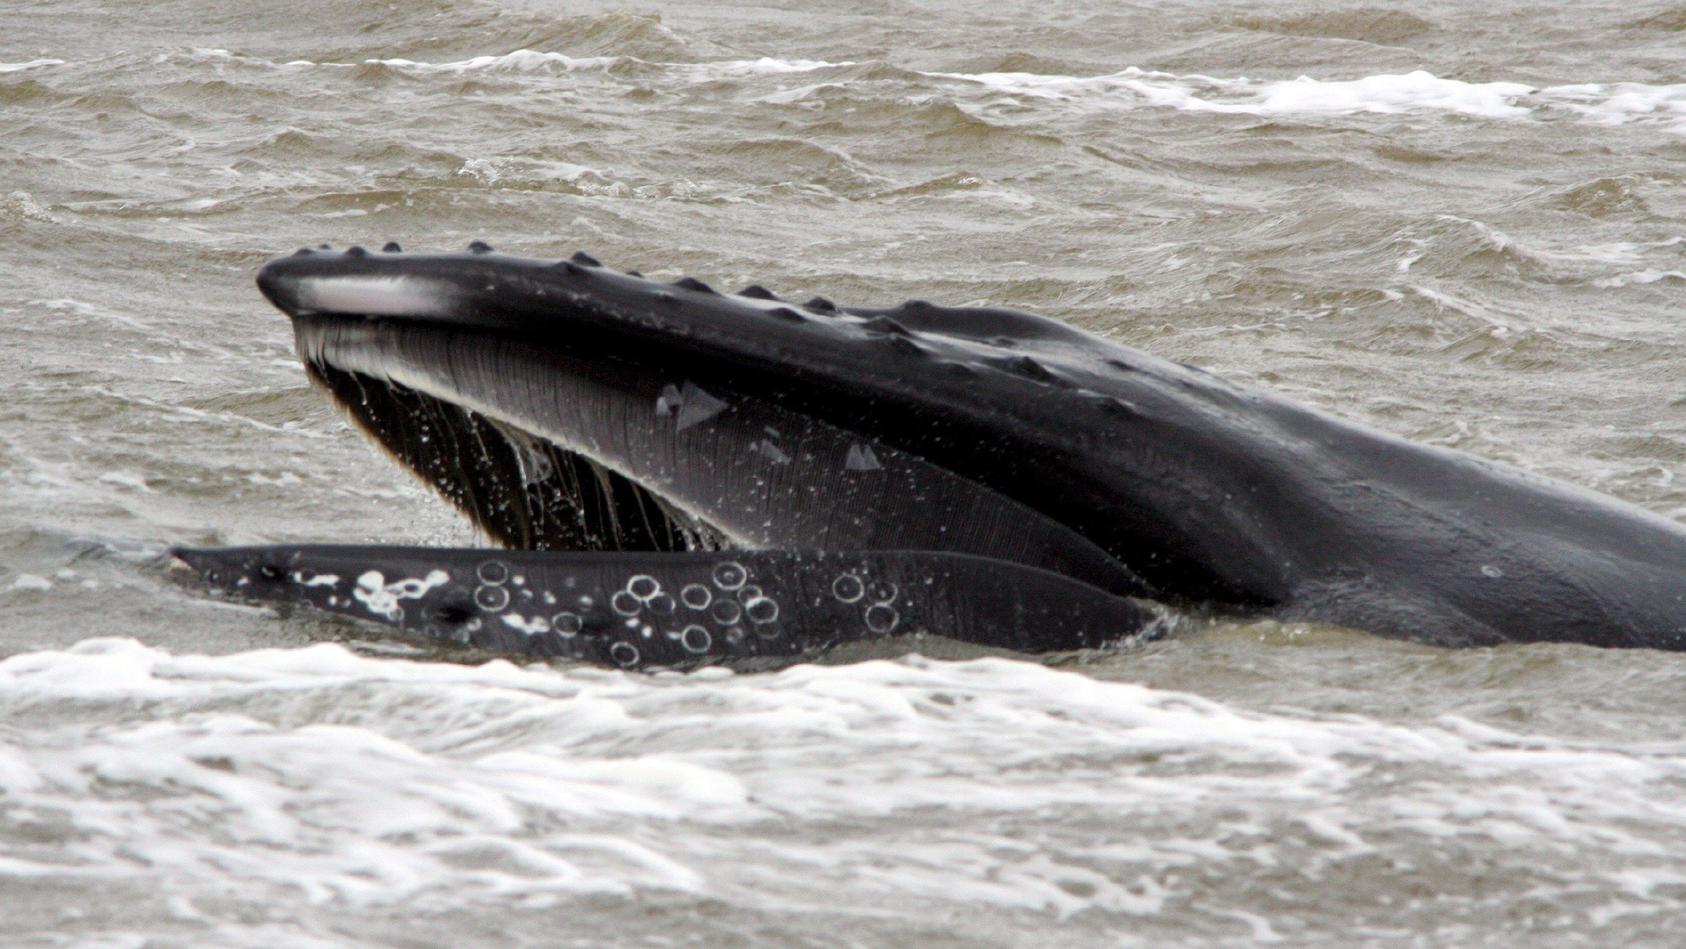 ARCHIV - Ein Buckelwal vor der niederländischen Küste bei Den Helder (Archivfoto/Illustration vom 12.05.2007).  Keine andere Walart singt so ausdauernd und vielfältig wie die Buckelwale. Der Walgesang ist eine herausragende Eigenschaft dieser Großwal